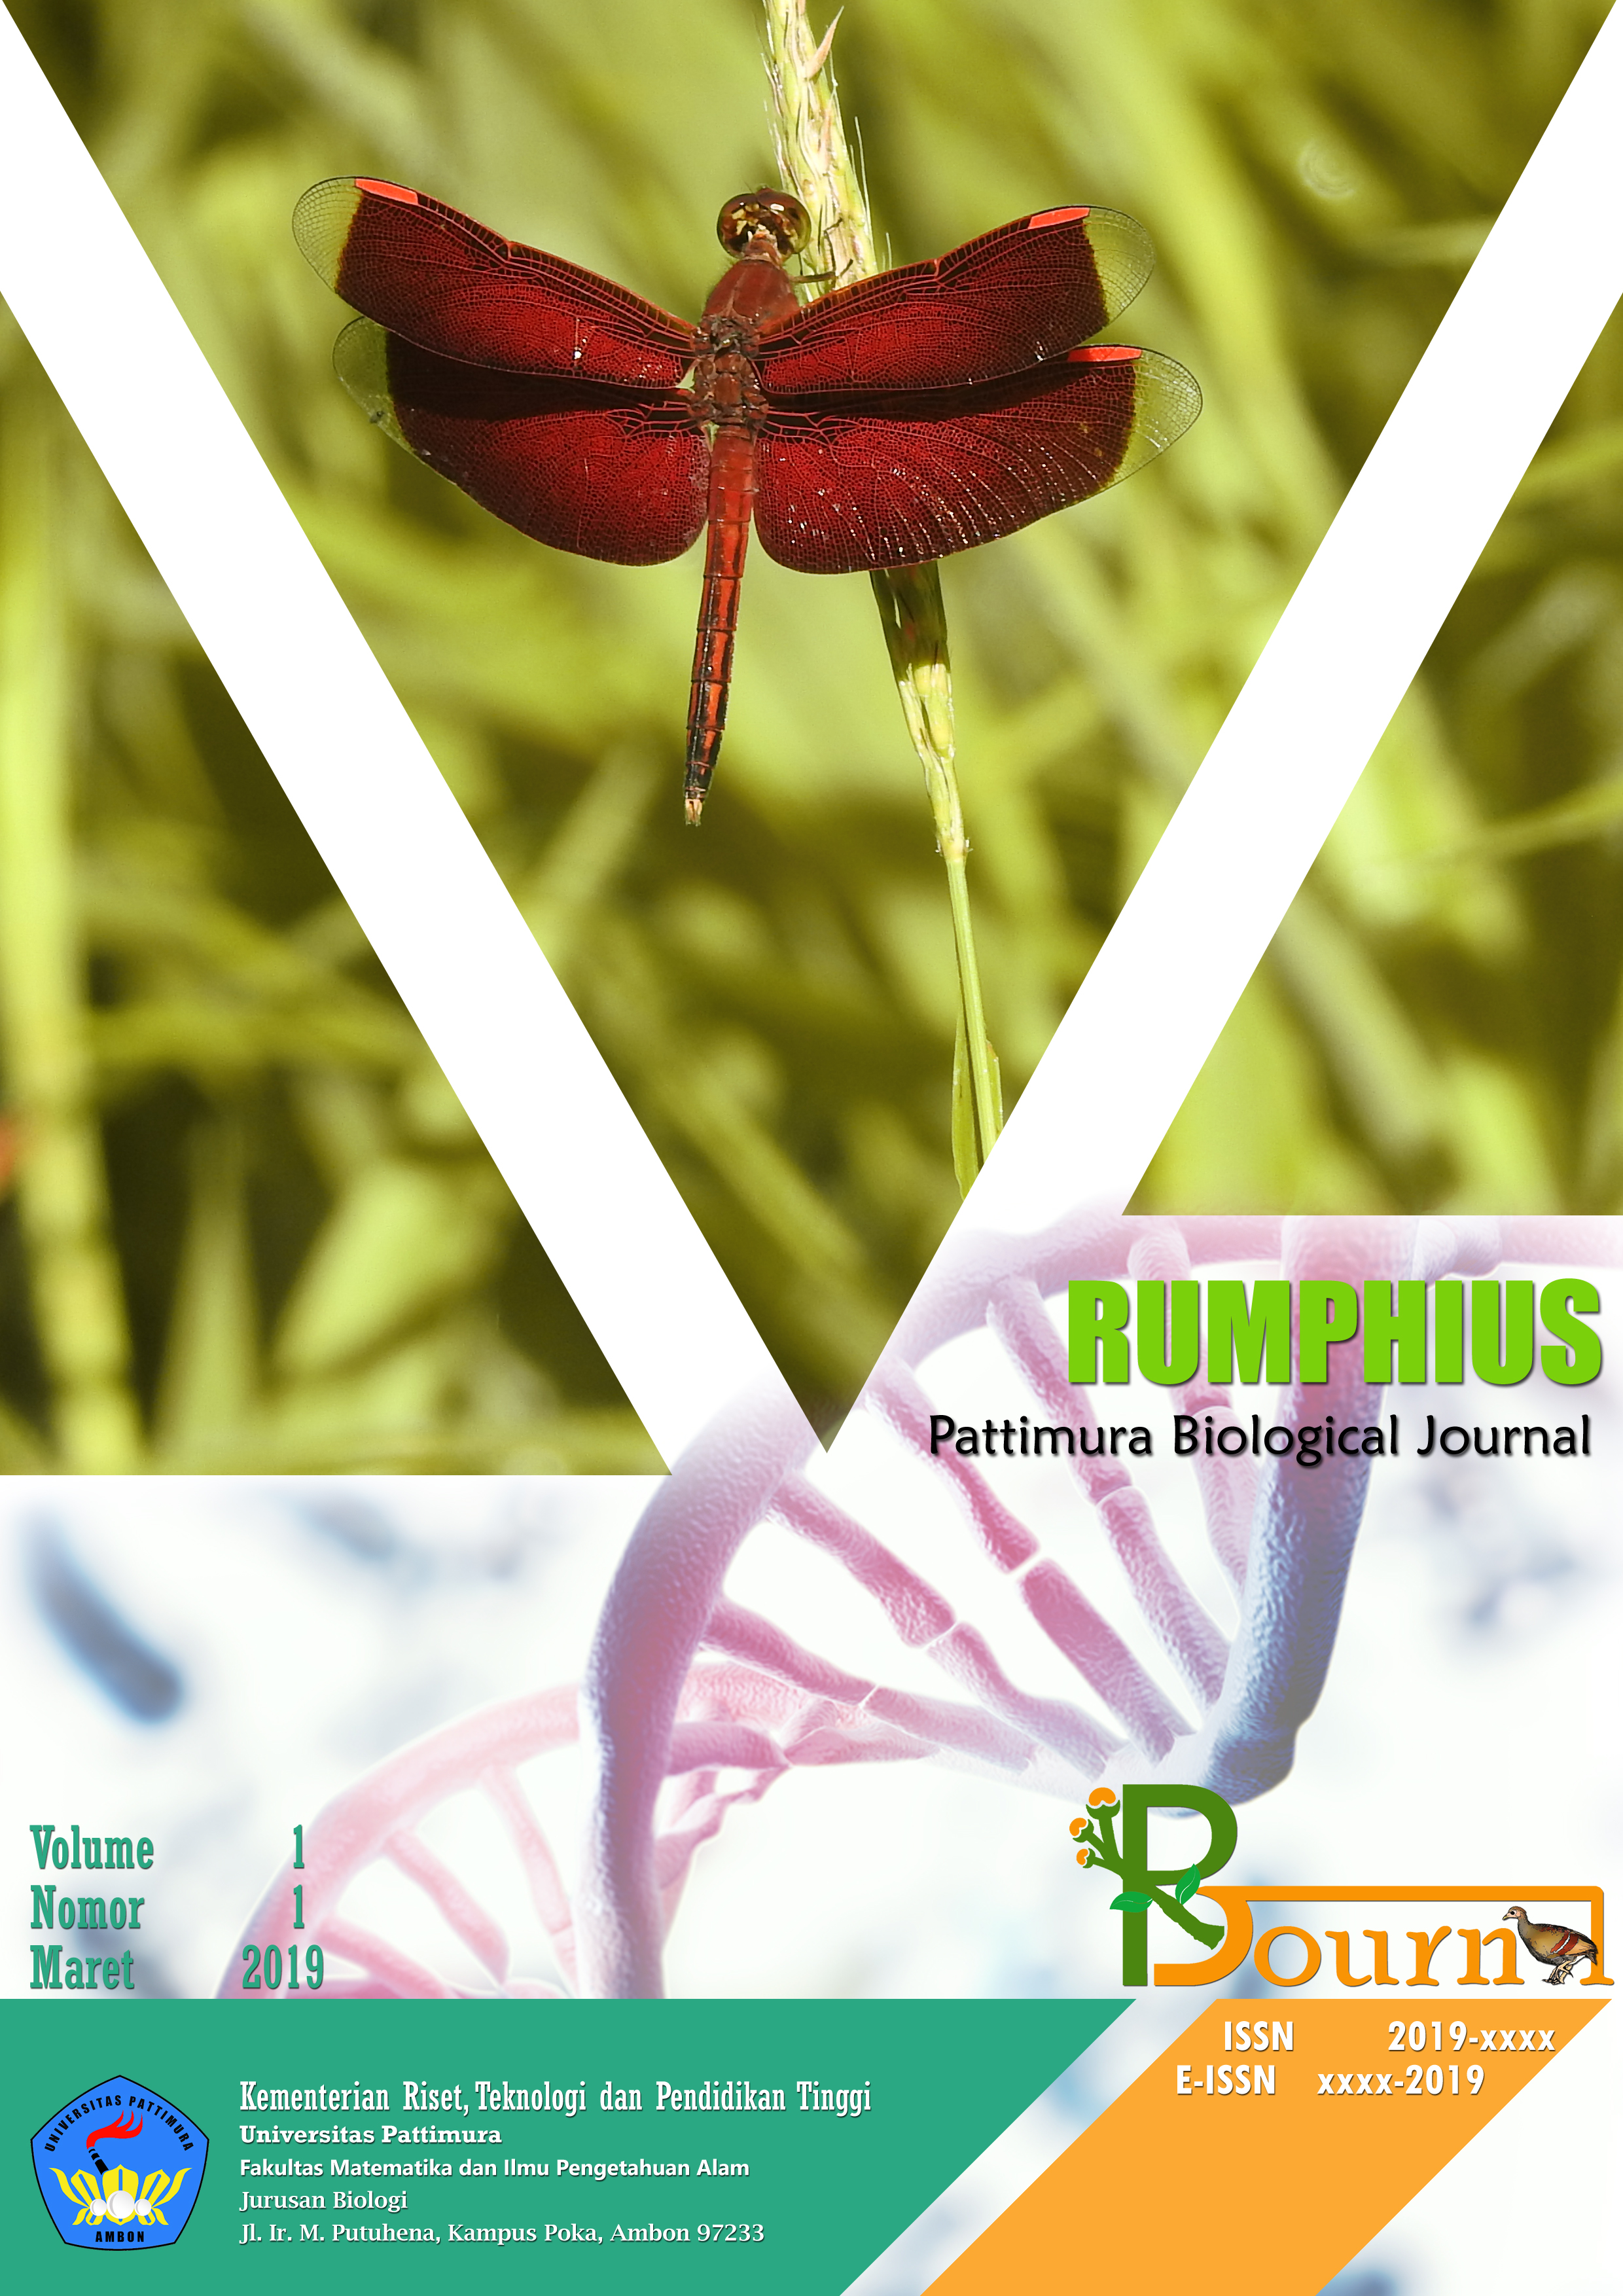 Rumphius Pattimura Biological Journal